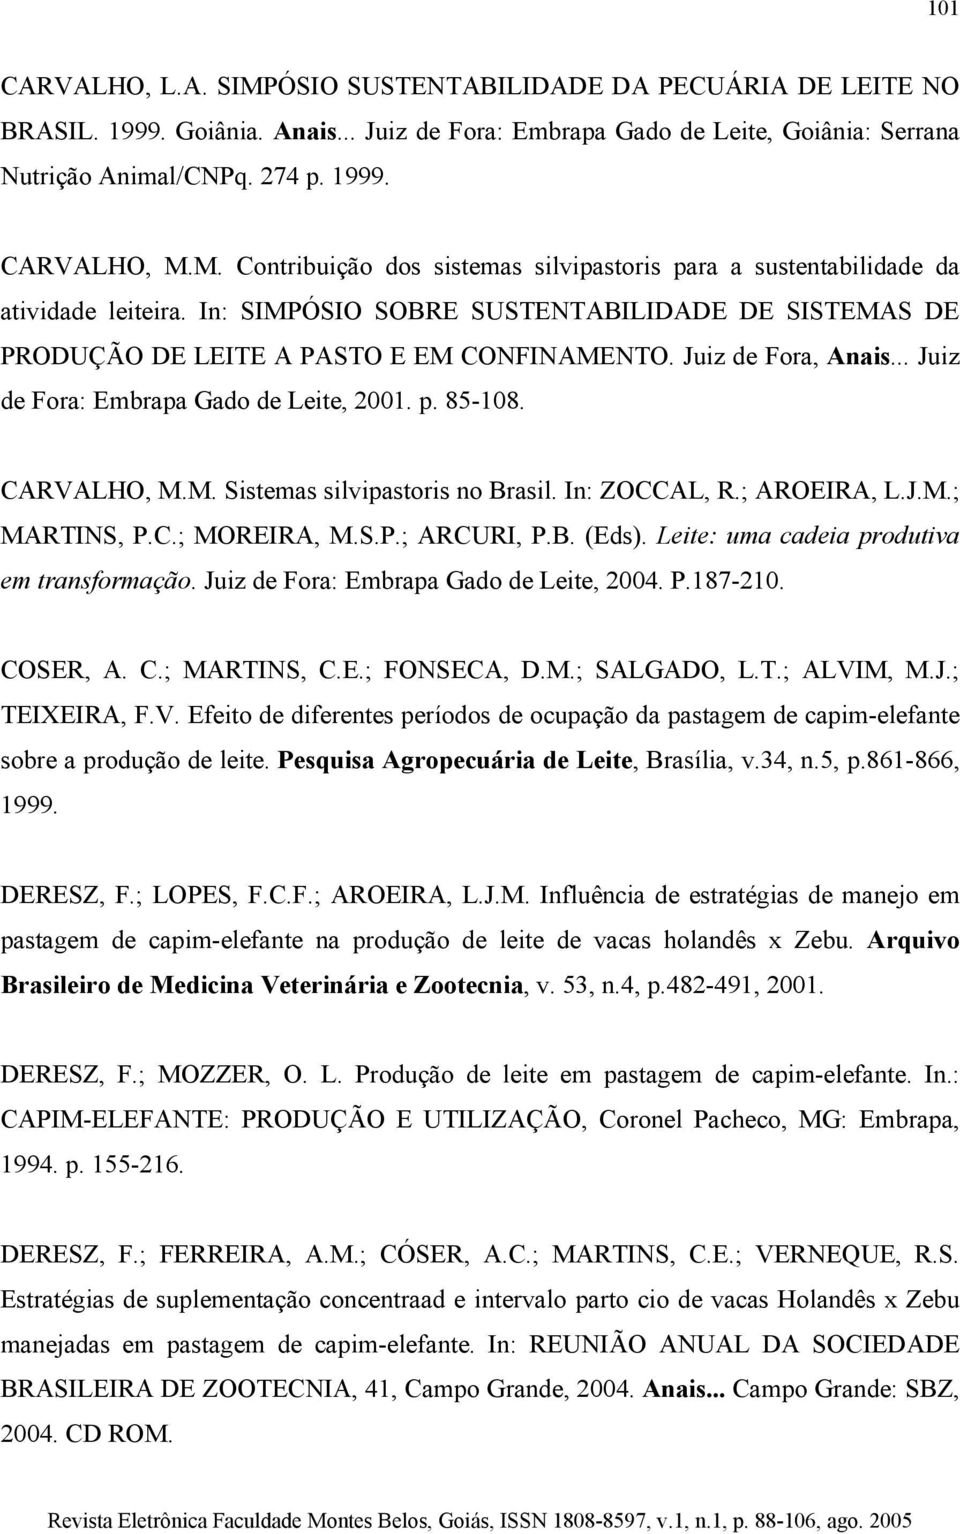 Juiz de Fora, Anais... Juiz de Fora: Embrapa Gado de Leite, 2001. p. 85-108. CARVALHO, M.M. Sistemas silvipastoris no Brasil. In: ZOCCAL, R.; AROEIRA, L.J.M.; MARTINS, P.C.; MOREIRA, M.S.P.; ARCURI, P.